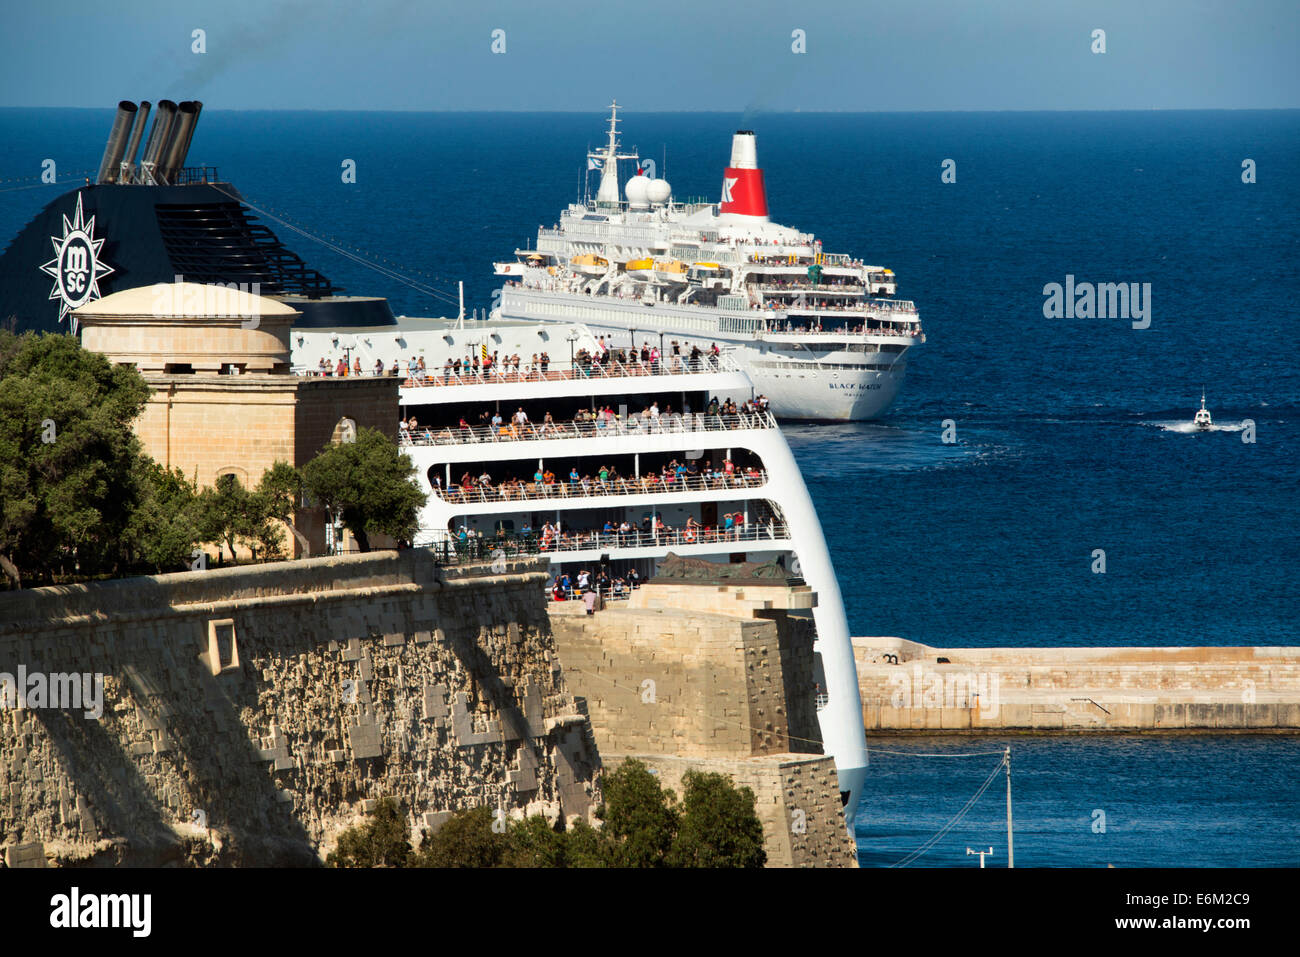 Valletta, Malta Stock Photo